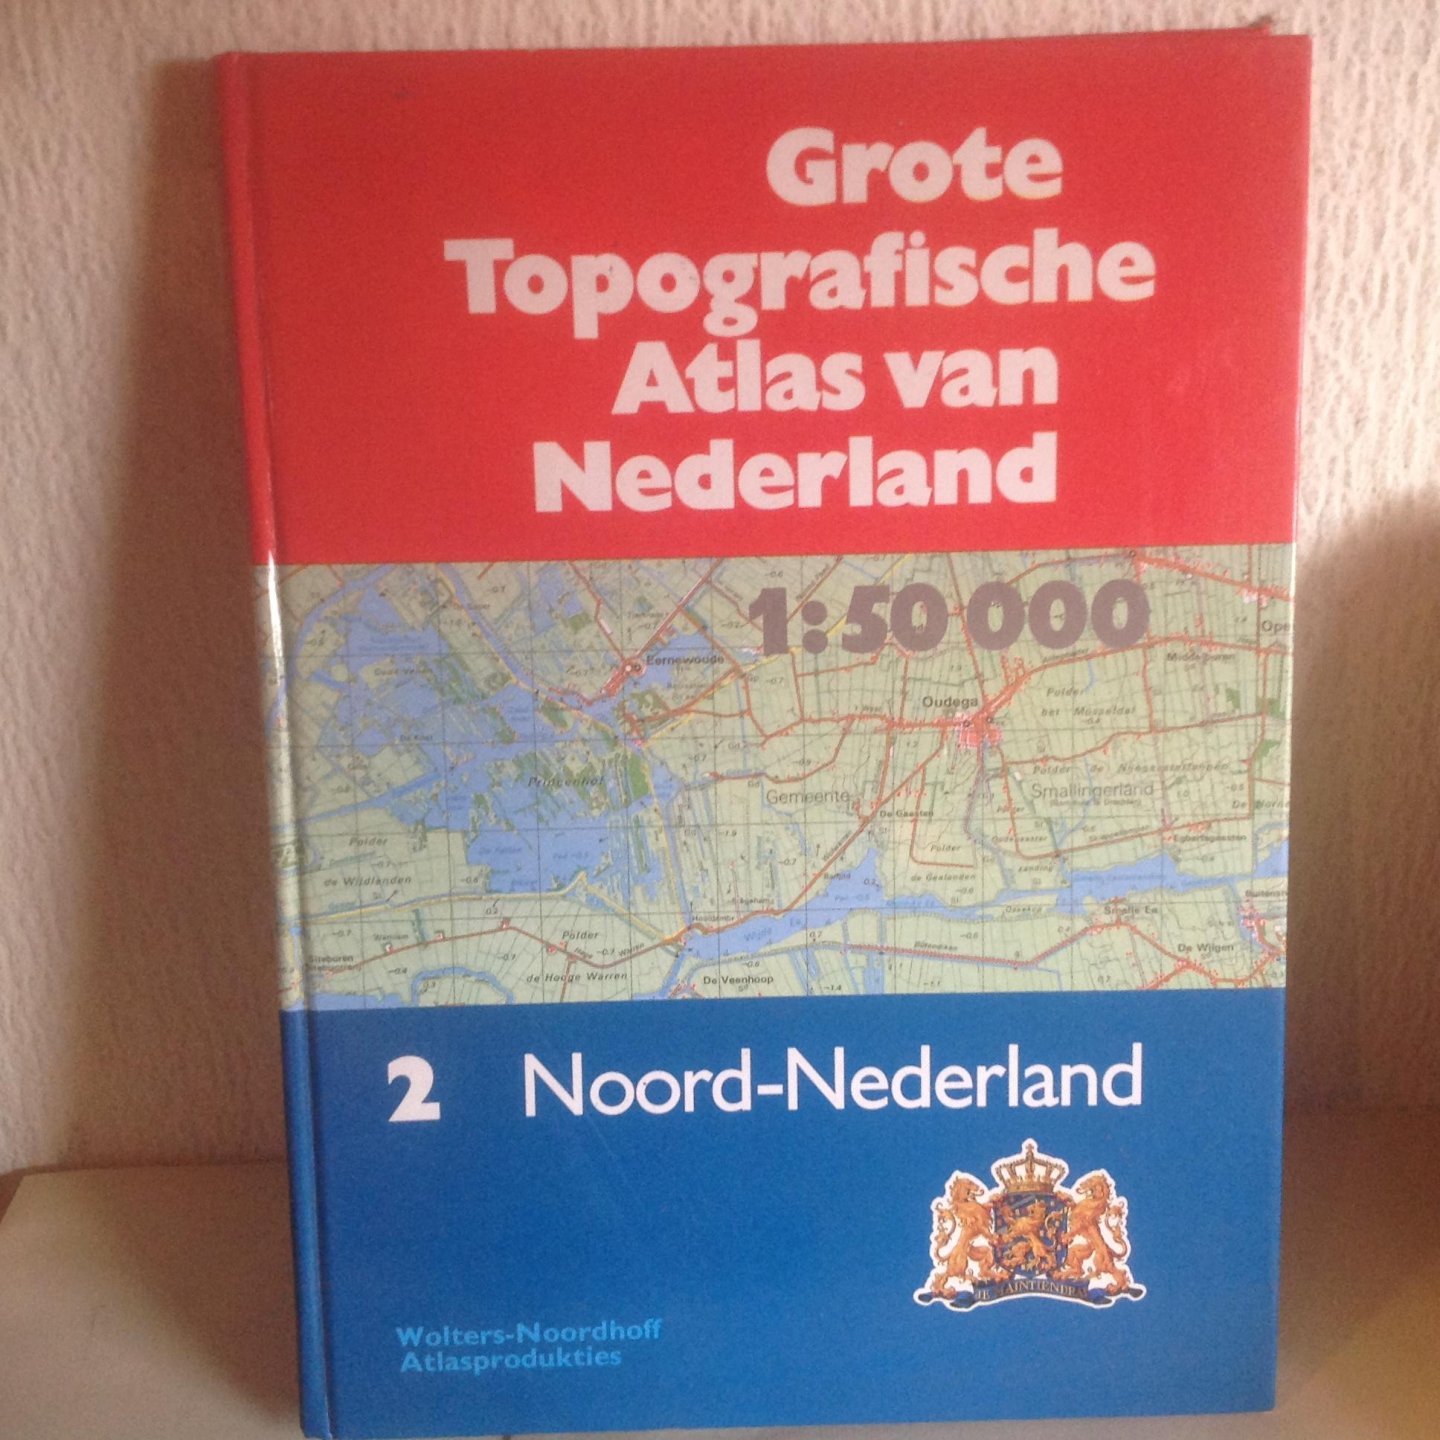  - Grote topografische atlas van nederland / 2 / druk 1